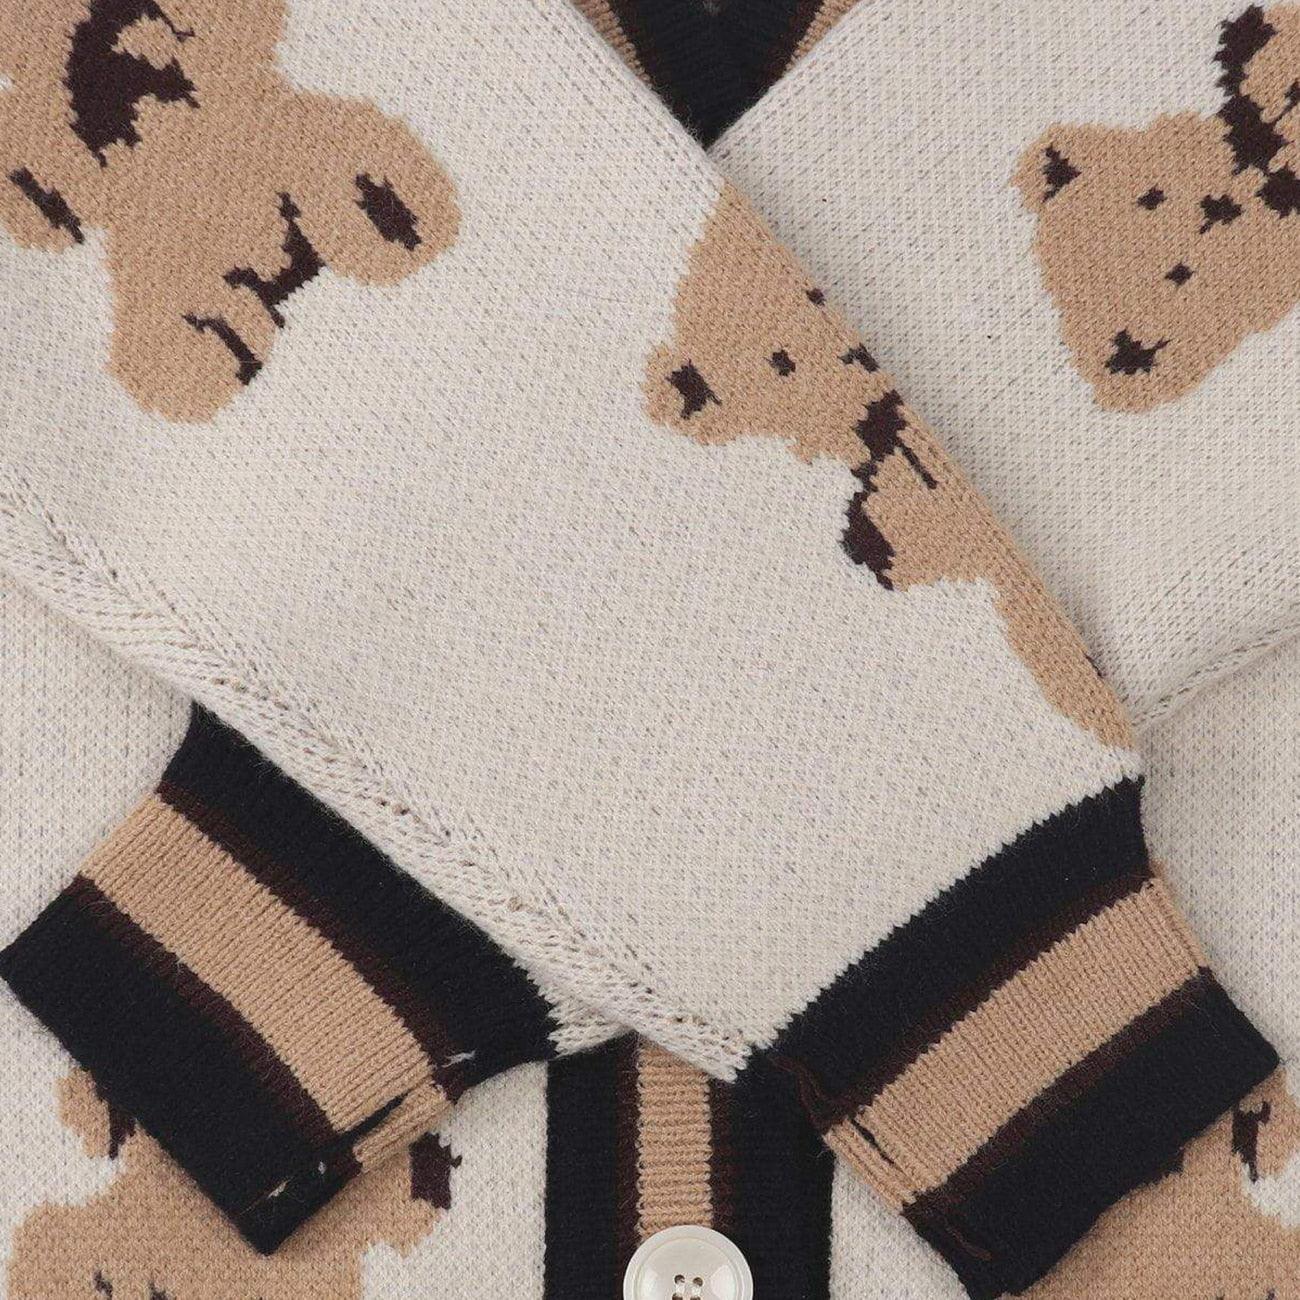 Harajuku Cartoon Bear Knit Cardigan Sweater - Embrace the Cuteness 🐻💖